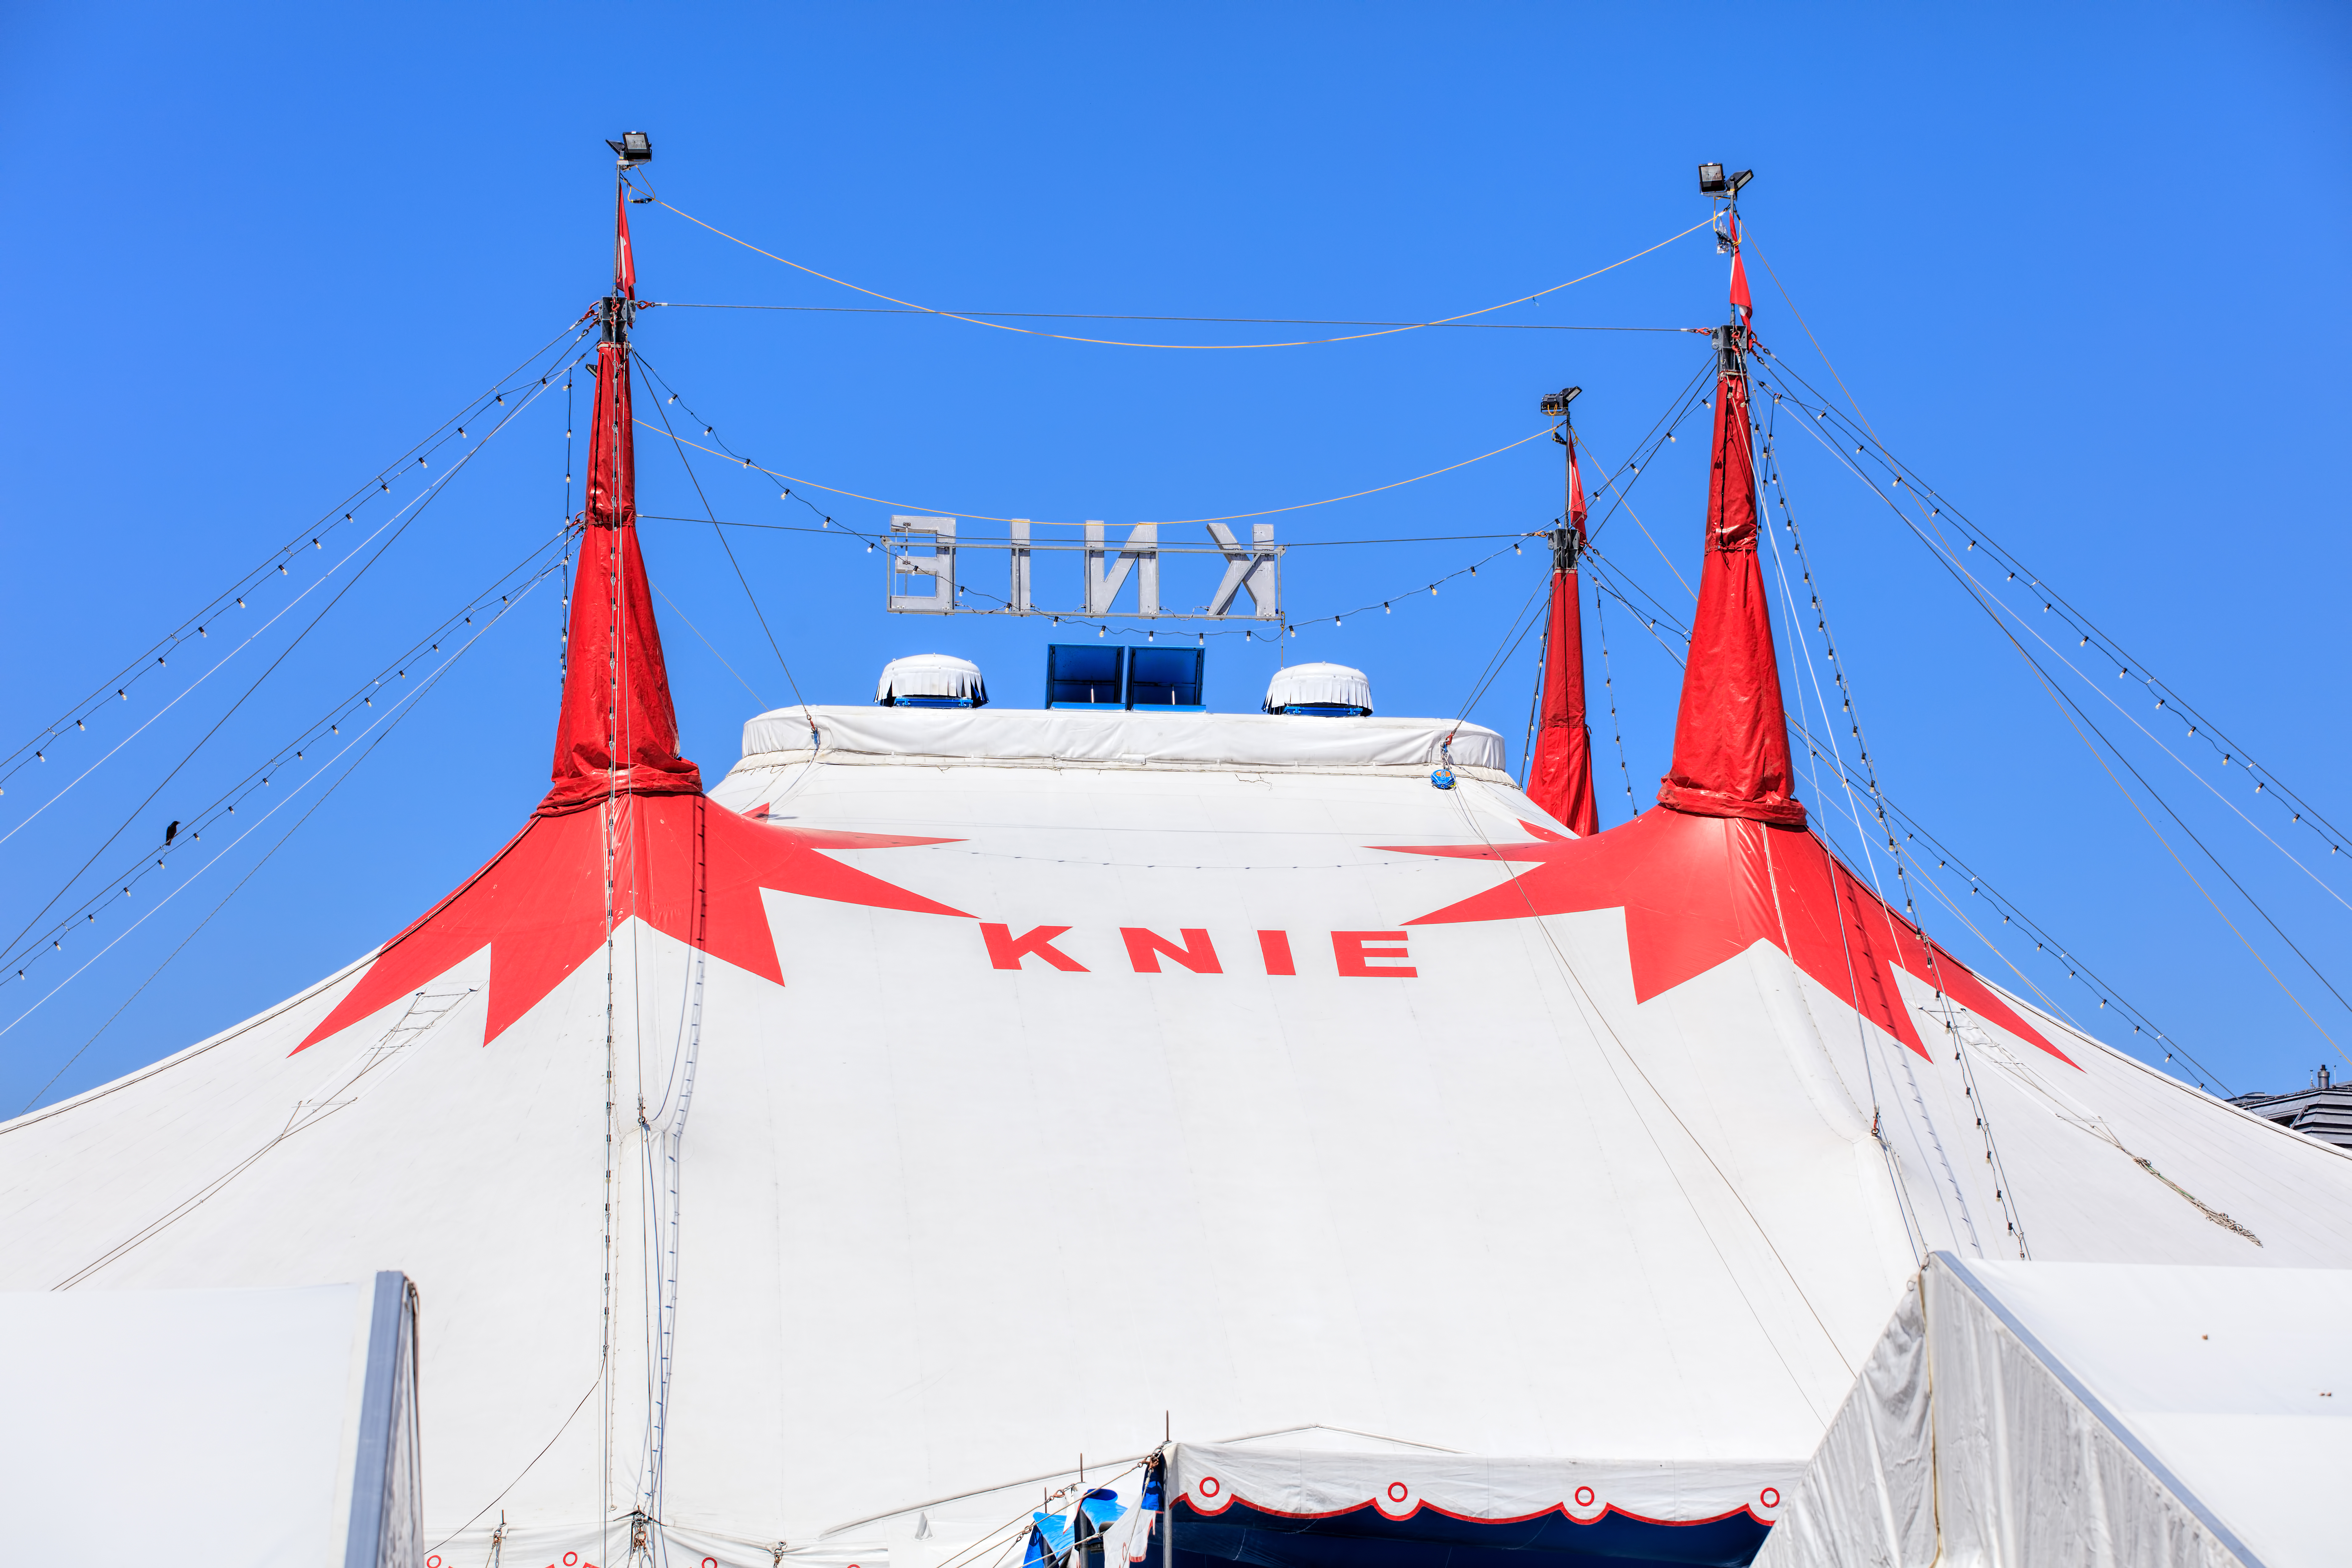 Tents Of Circus Knie In Zurich, Switzerland